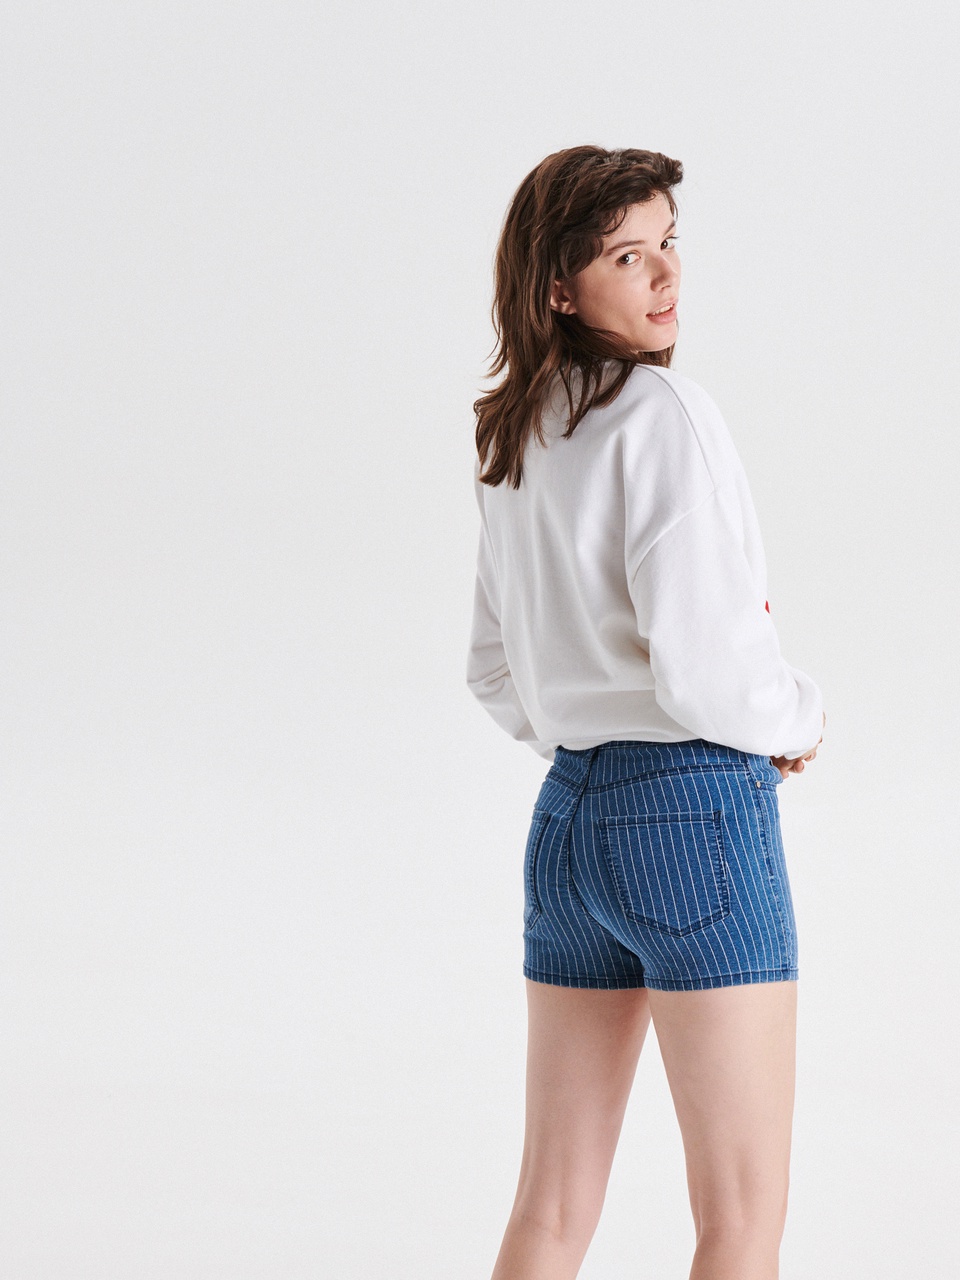 Джинсовые шорты high waist - 699 ₽, заказать онлайн.